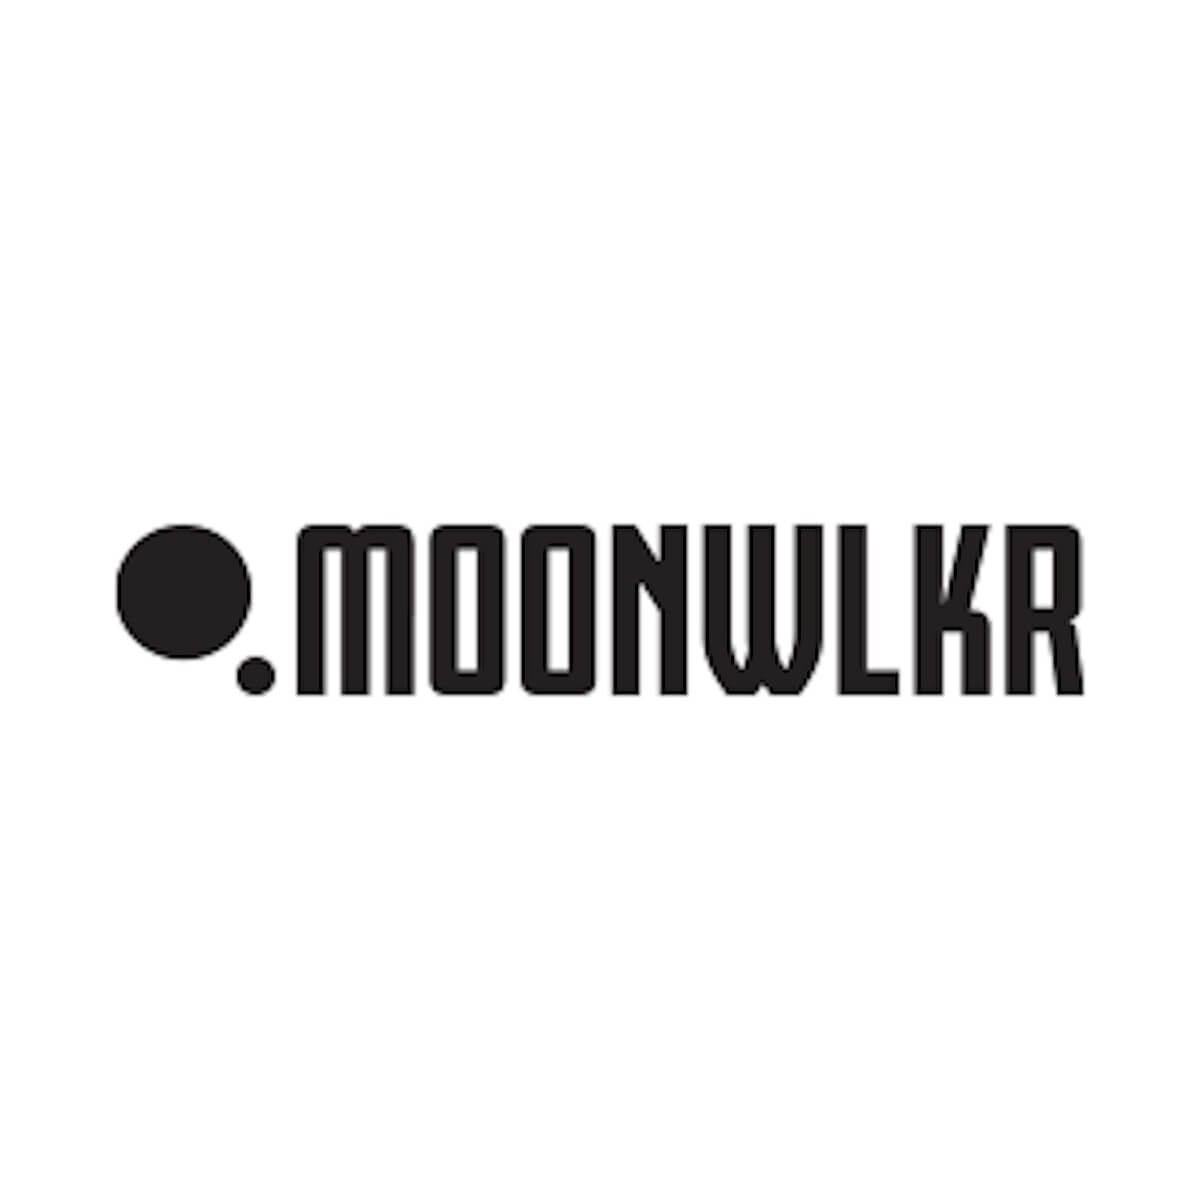 Moon walker delta 8 review %sepshadesofgreen